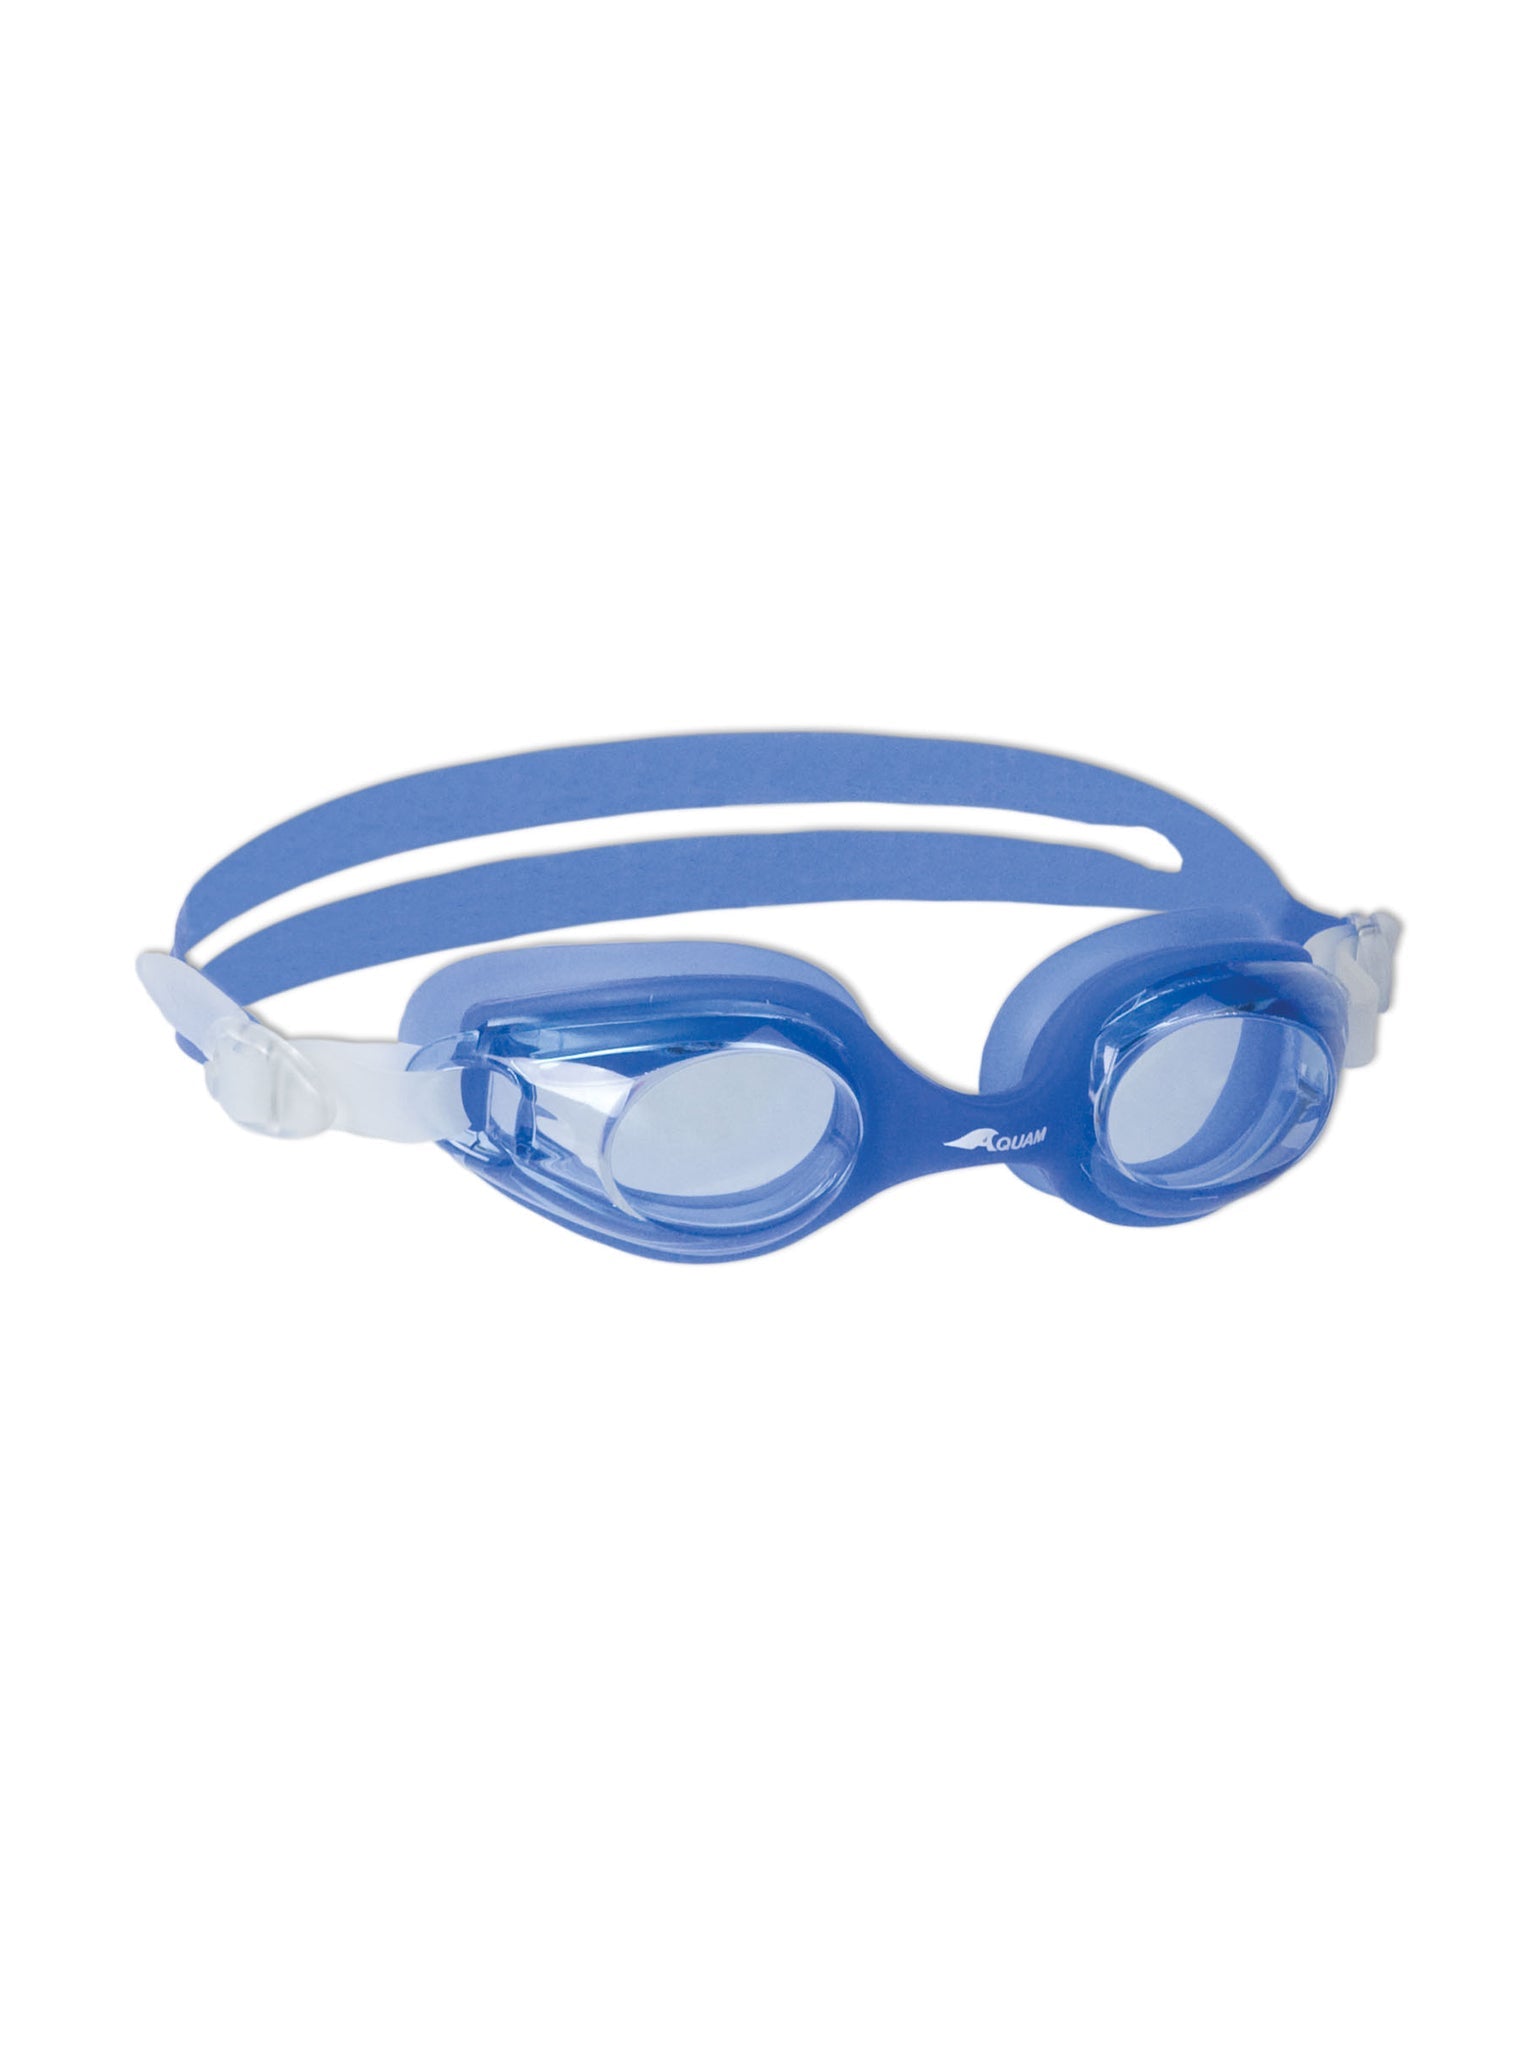 Lunettes de natation Twist Junior - Bleu/Clair